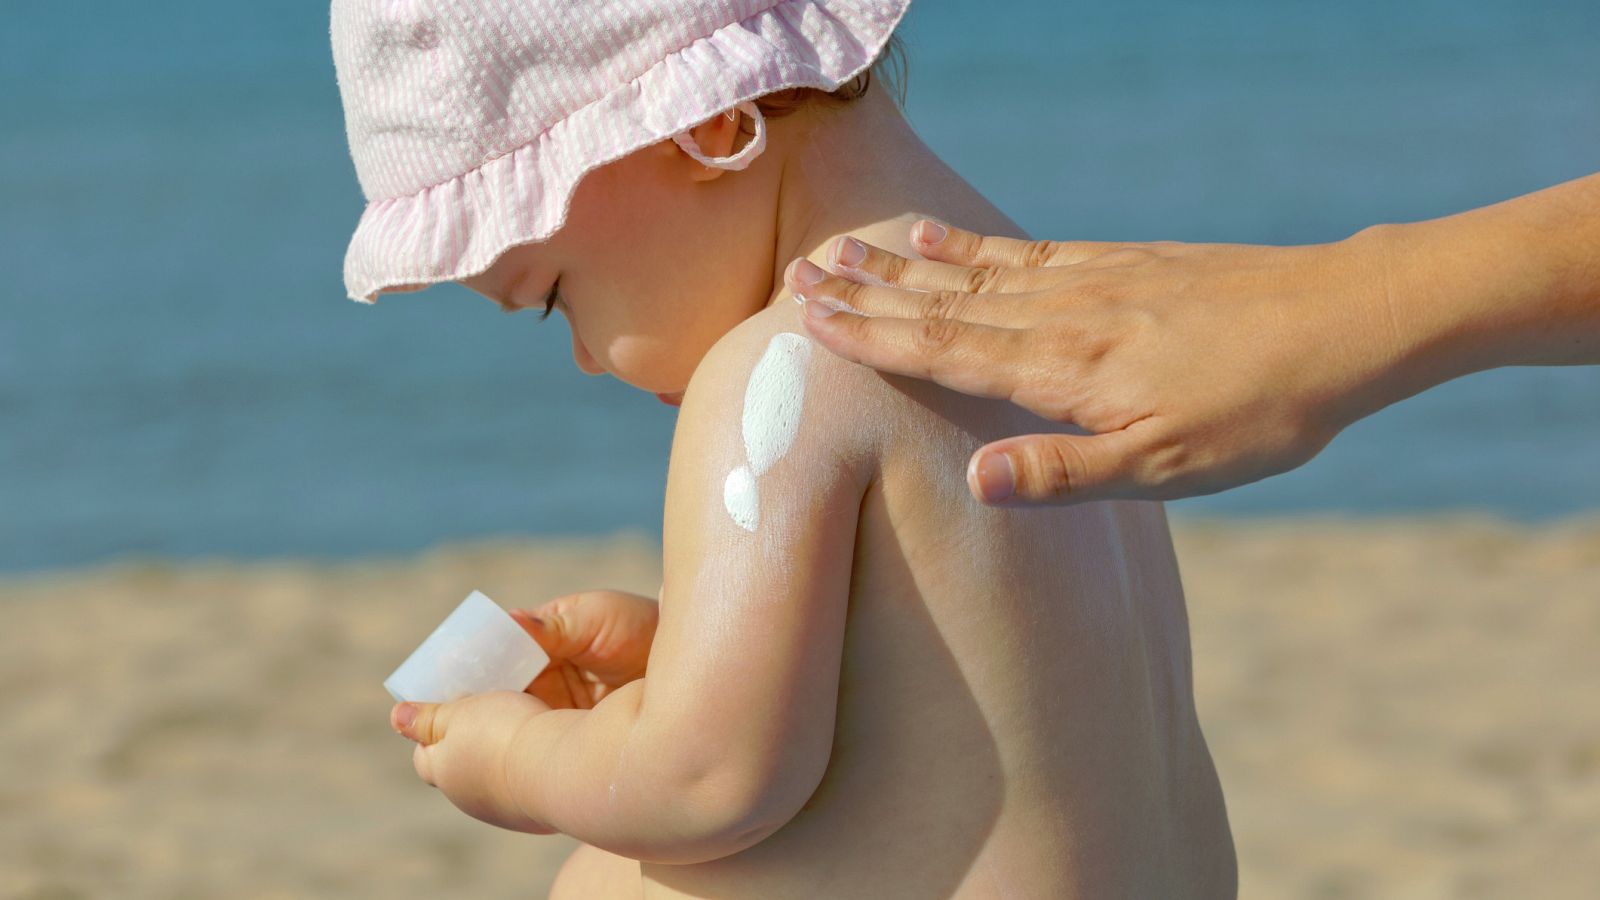 El 90%de los cánceres de piel están originados por una sobreexposición solar a lo largo de la vida, sobre todo cuando se es joven.